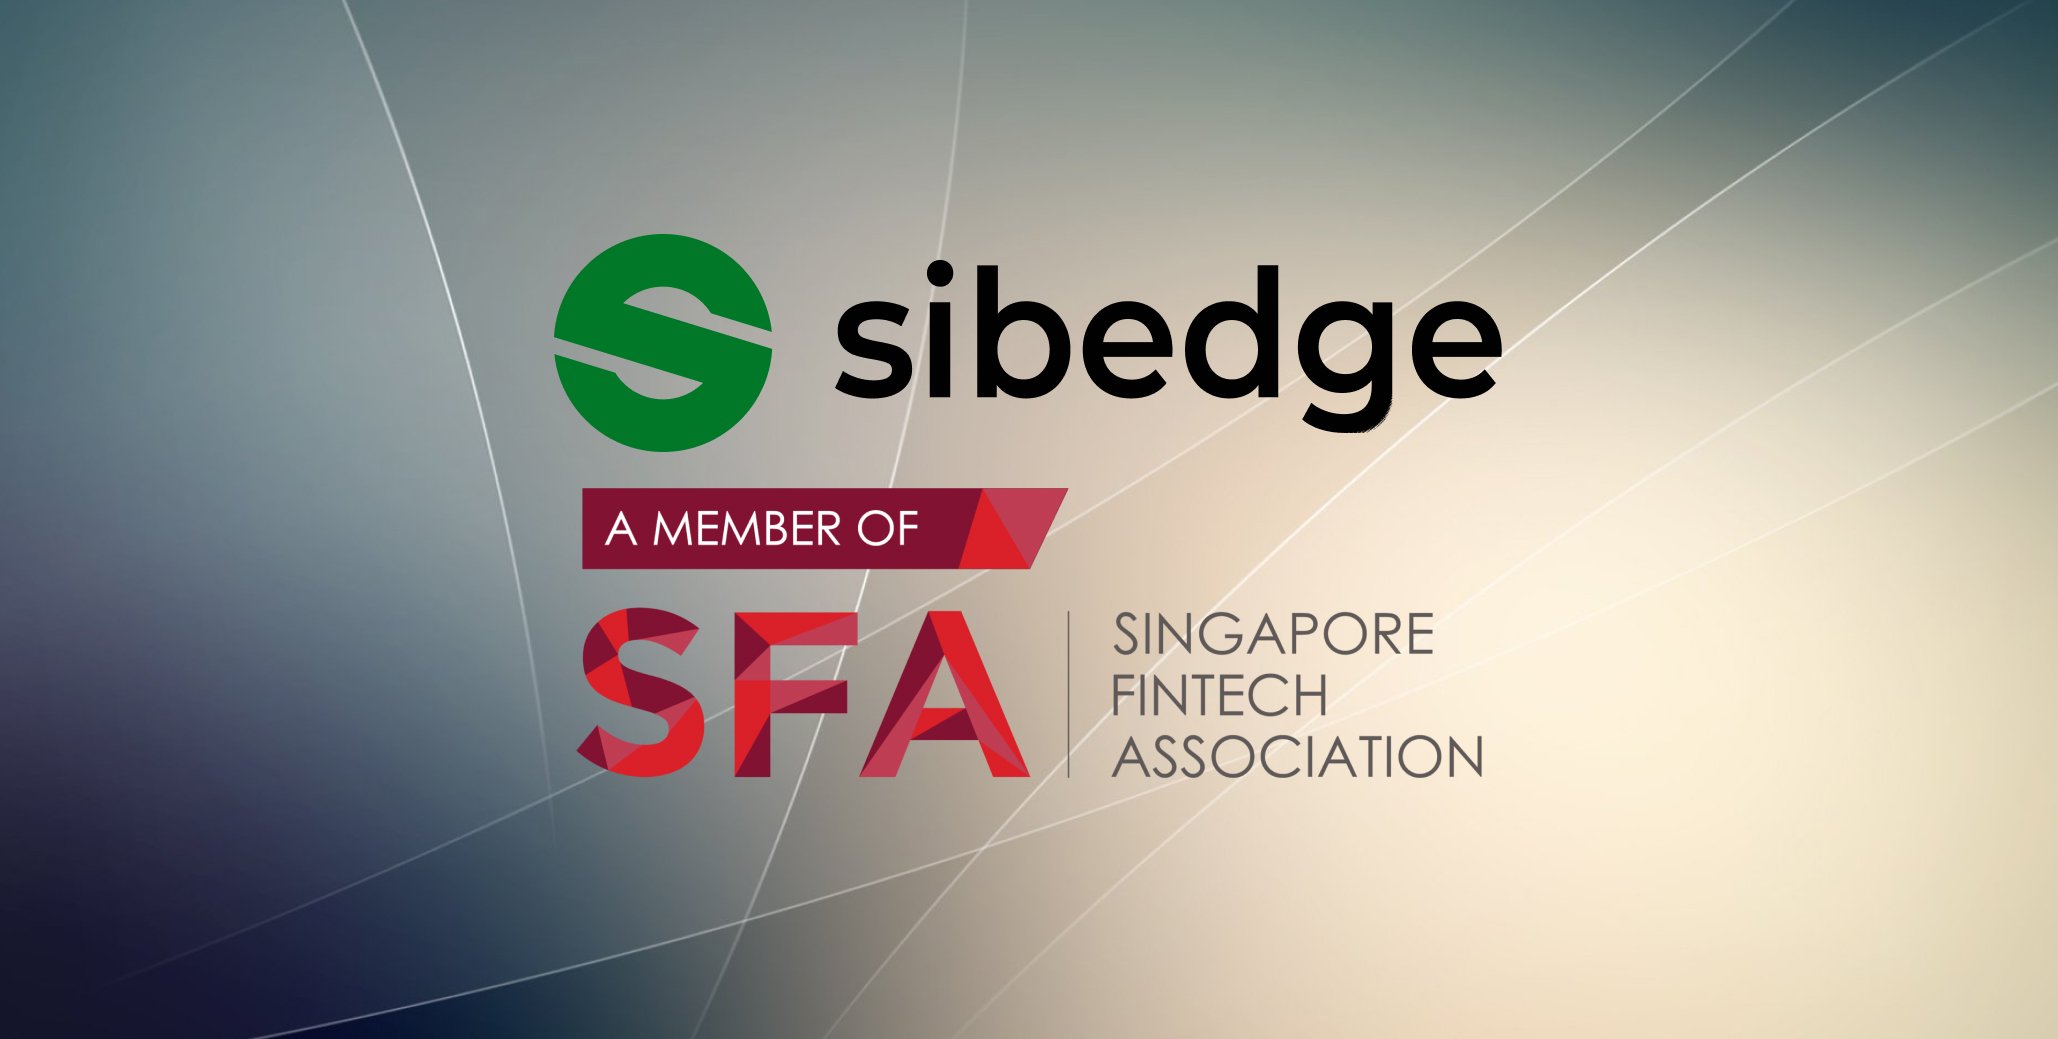 Sibedge стала корпоративным членом Singapore FinTech Association